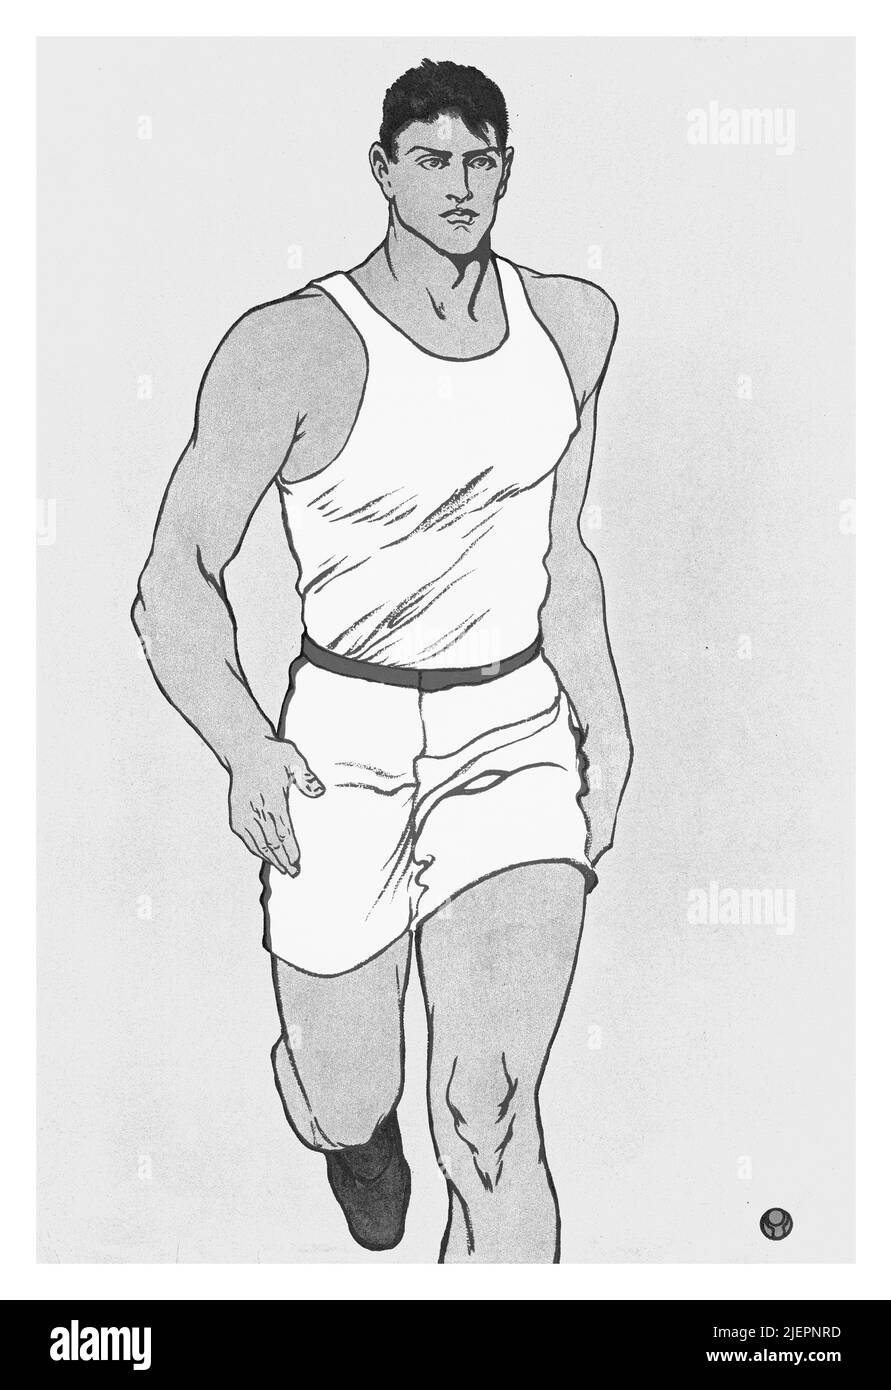 Illustration du début du 20th siècle par Edward Penfield (1866-1925) sur la couverture de collier, un magazine d'intérêt général américain présentant un athlète en course à pied. Banque D'Images